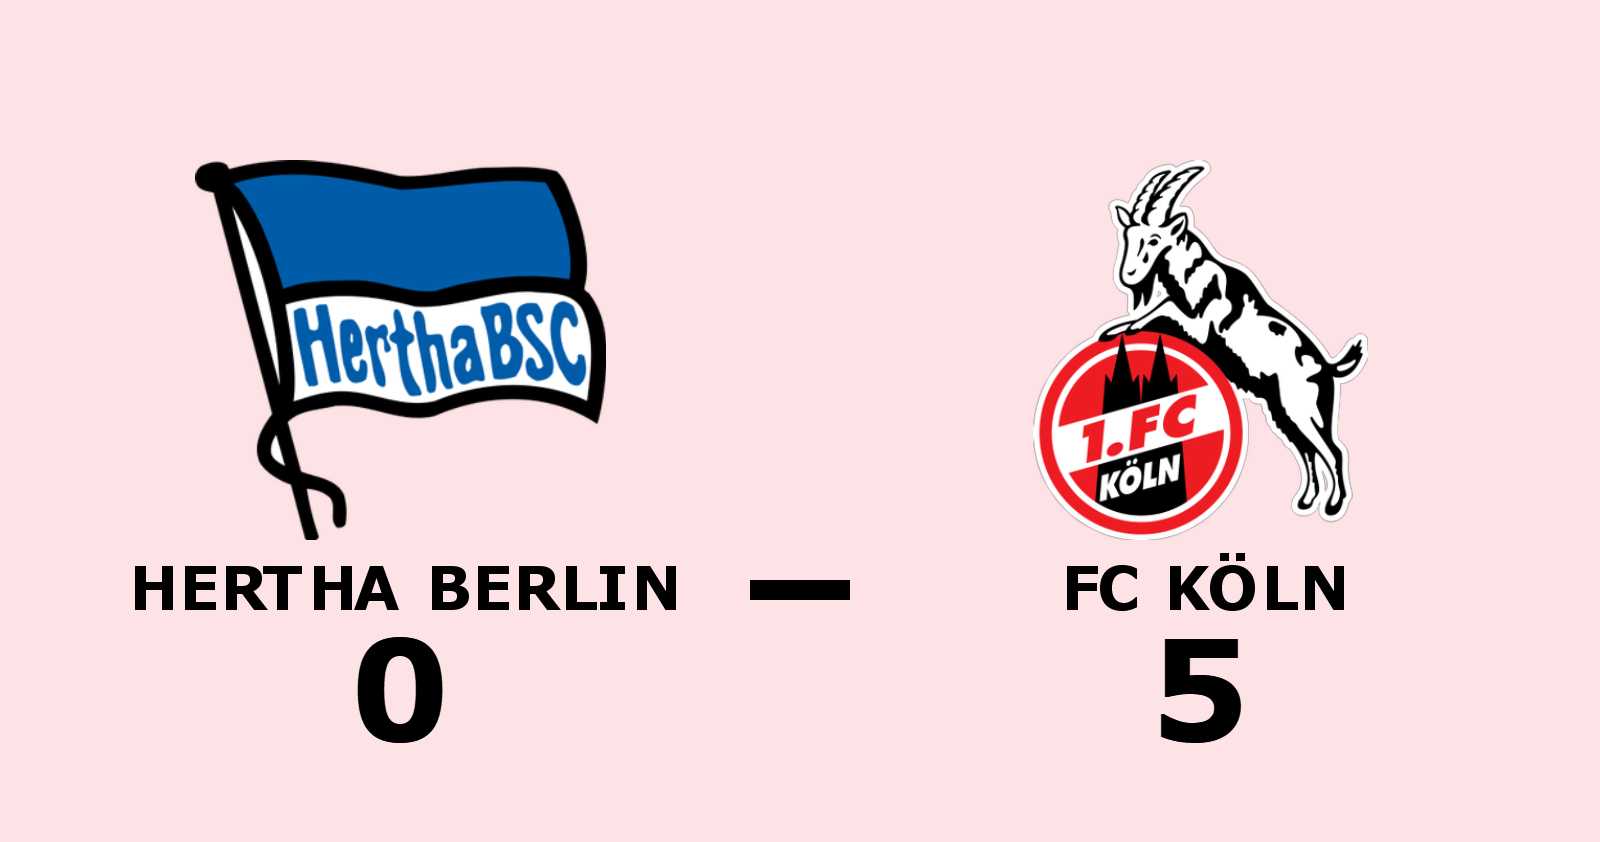 Målfest när FC Köln besegrade Hertha Berlin